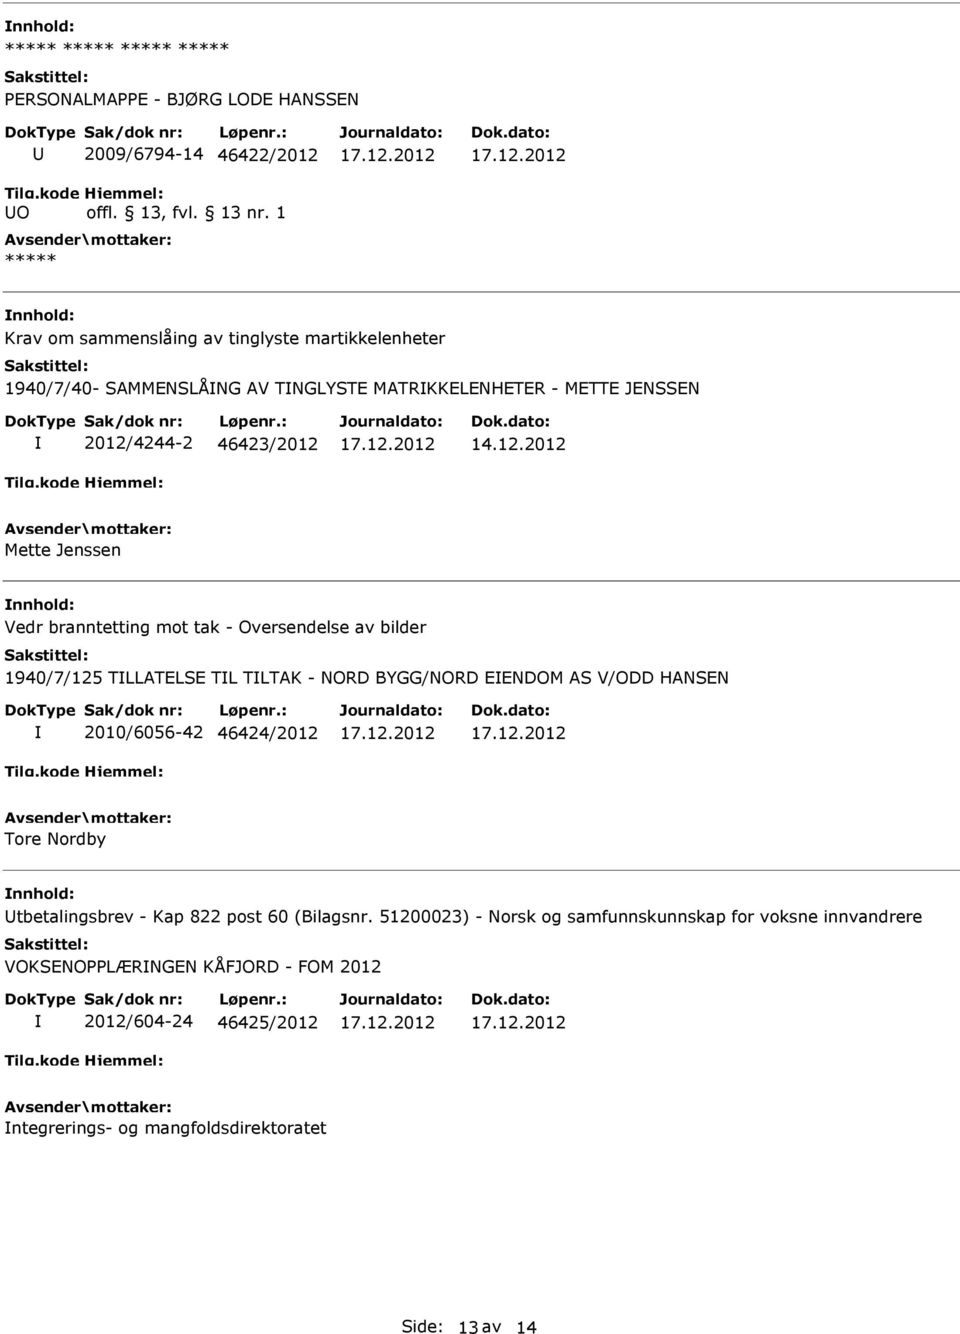 TLTAK - NORD BYGG/NORD EENDOM AS V/ODD HANSEN 2010/6056-42 46424/2012 Tore Nordby tbetalingsbrev - Kap 822 post 60 (Bilagsnr.